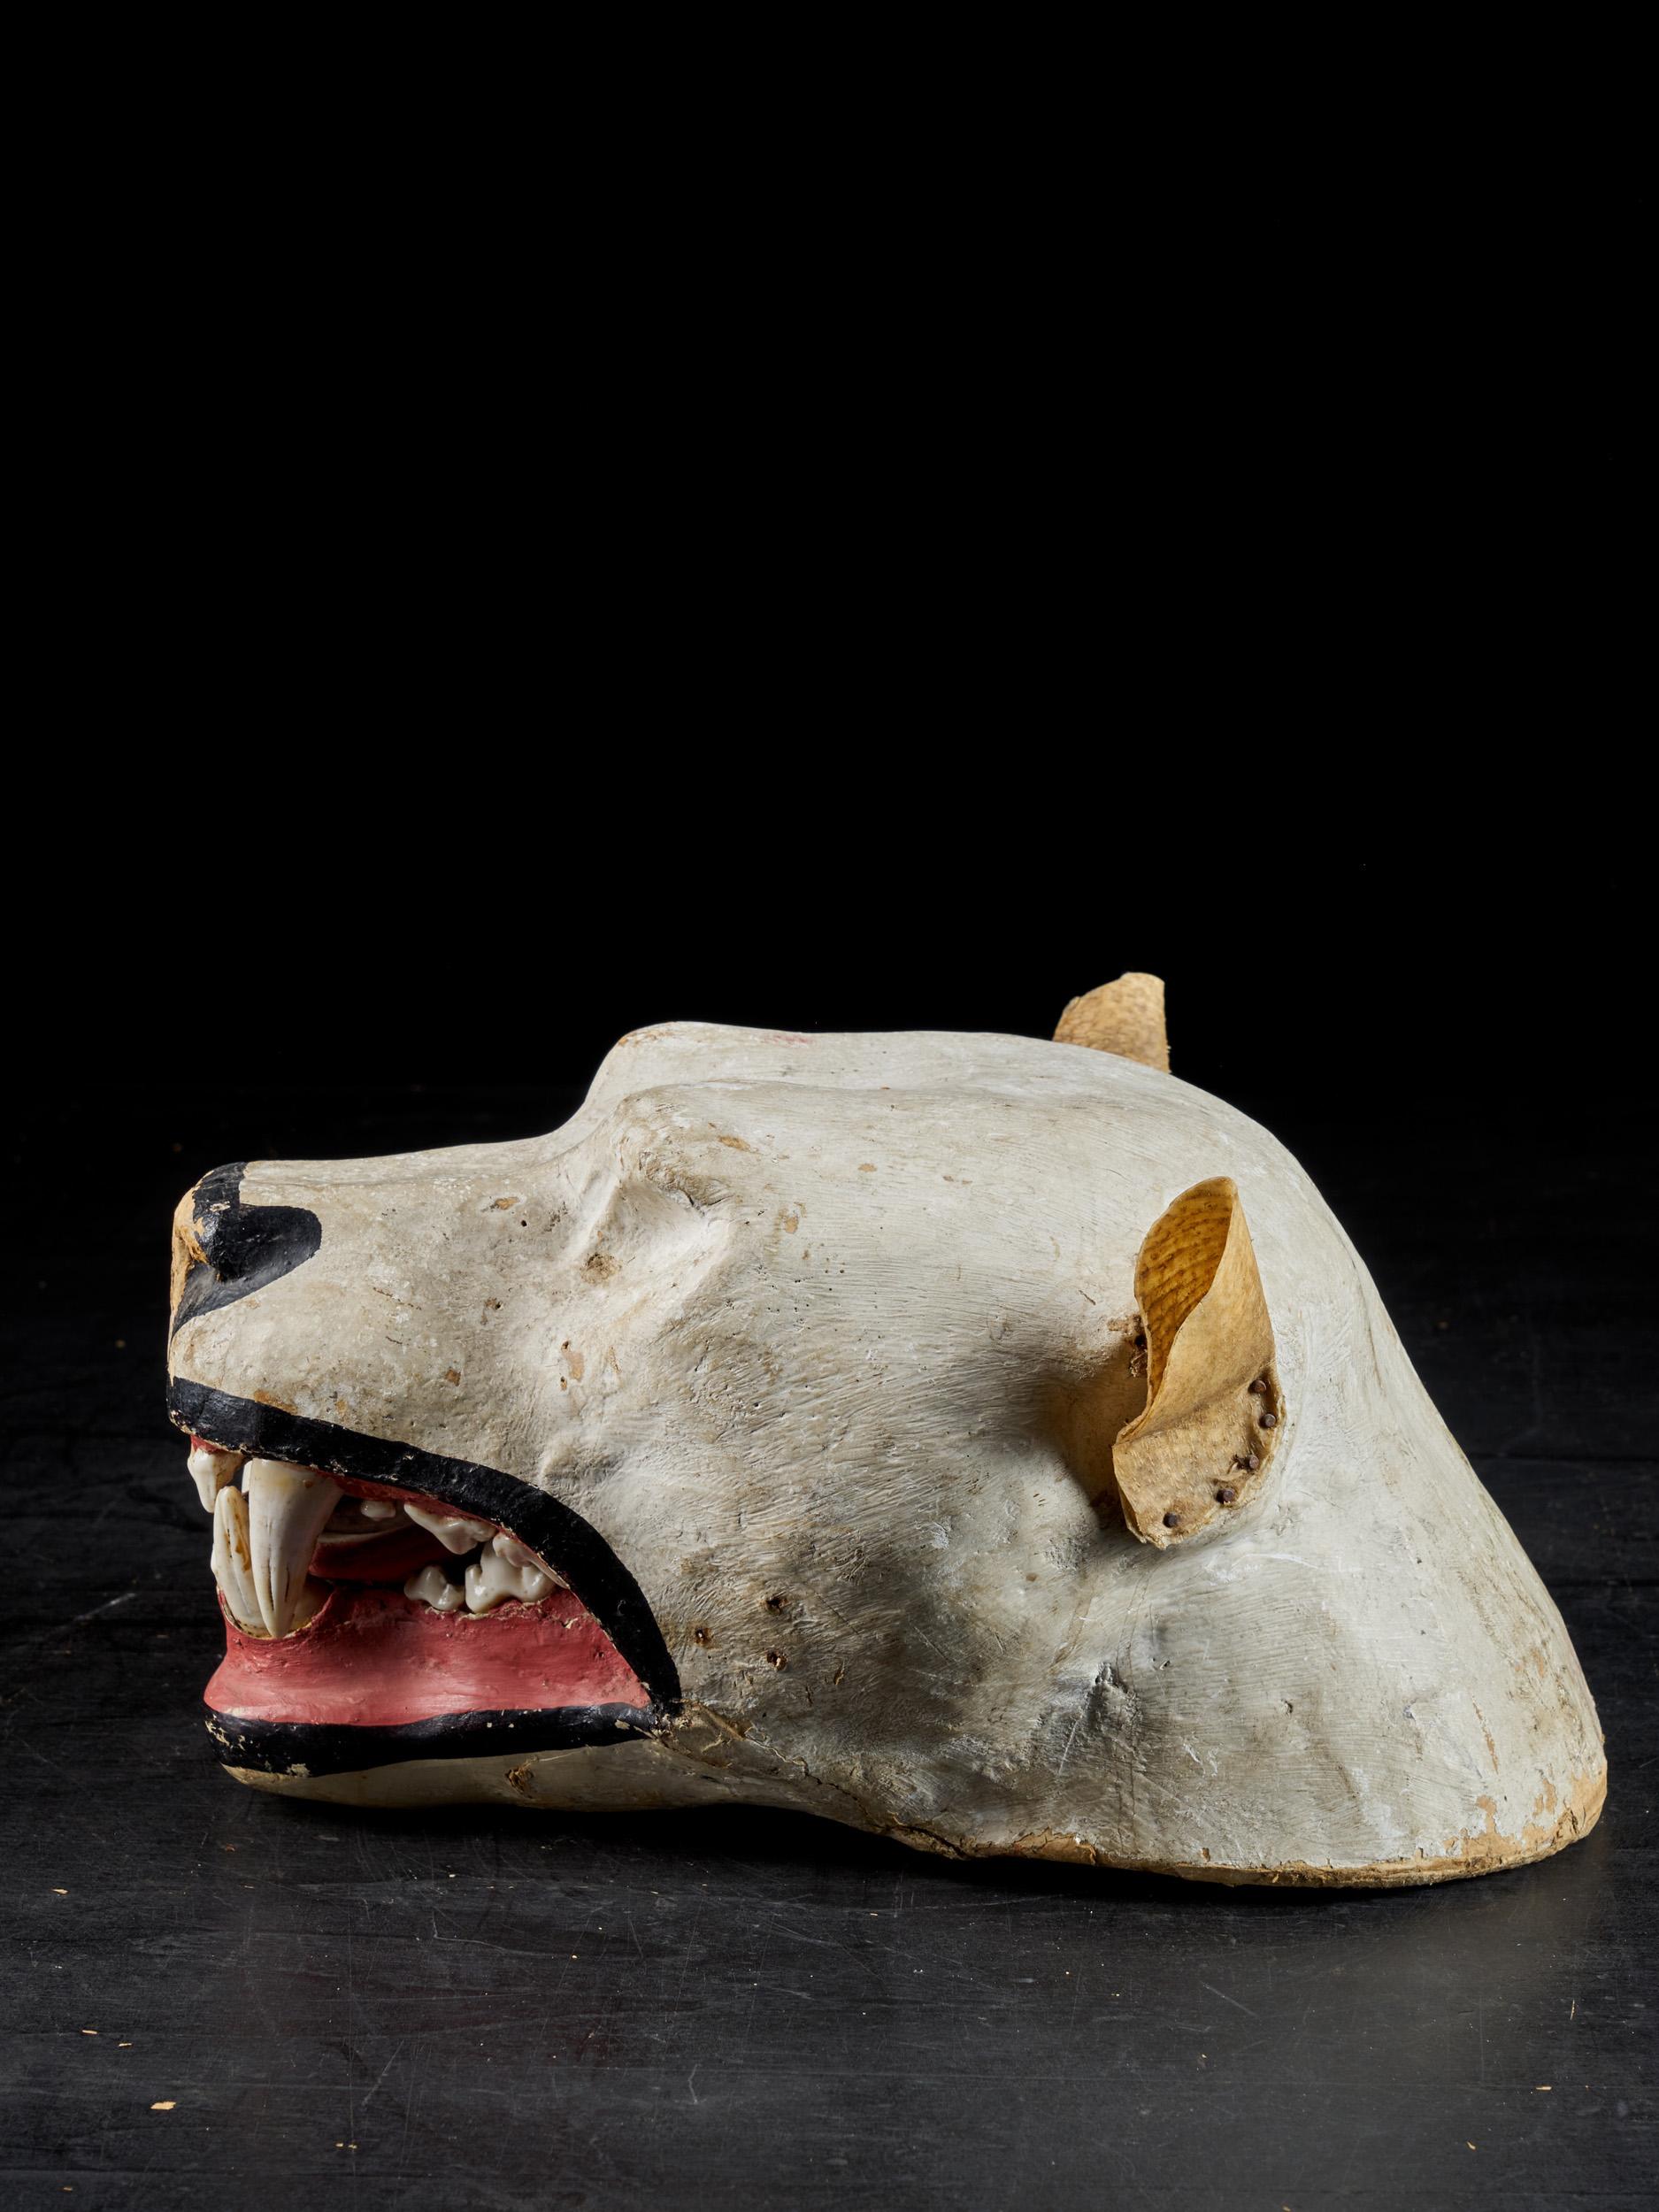 Tête de lion en papier mâché, avec une belle patine colorée en blanc cassé, noir et rouge. La tête a été utilisée pour la taxidermie au 19ème siècle. Lors de la préparation d'un spécimen de taxidermie, le moule est prêt pendant que la peau sèche.